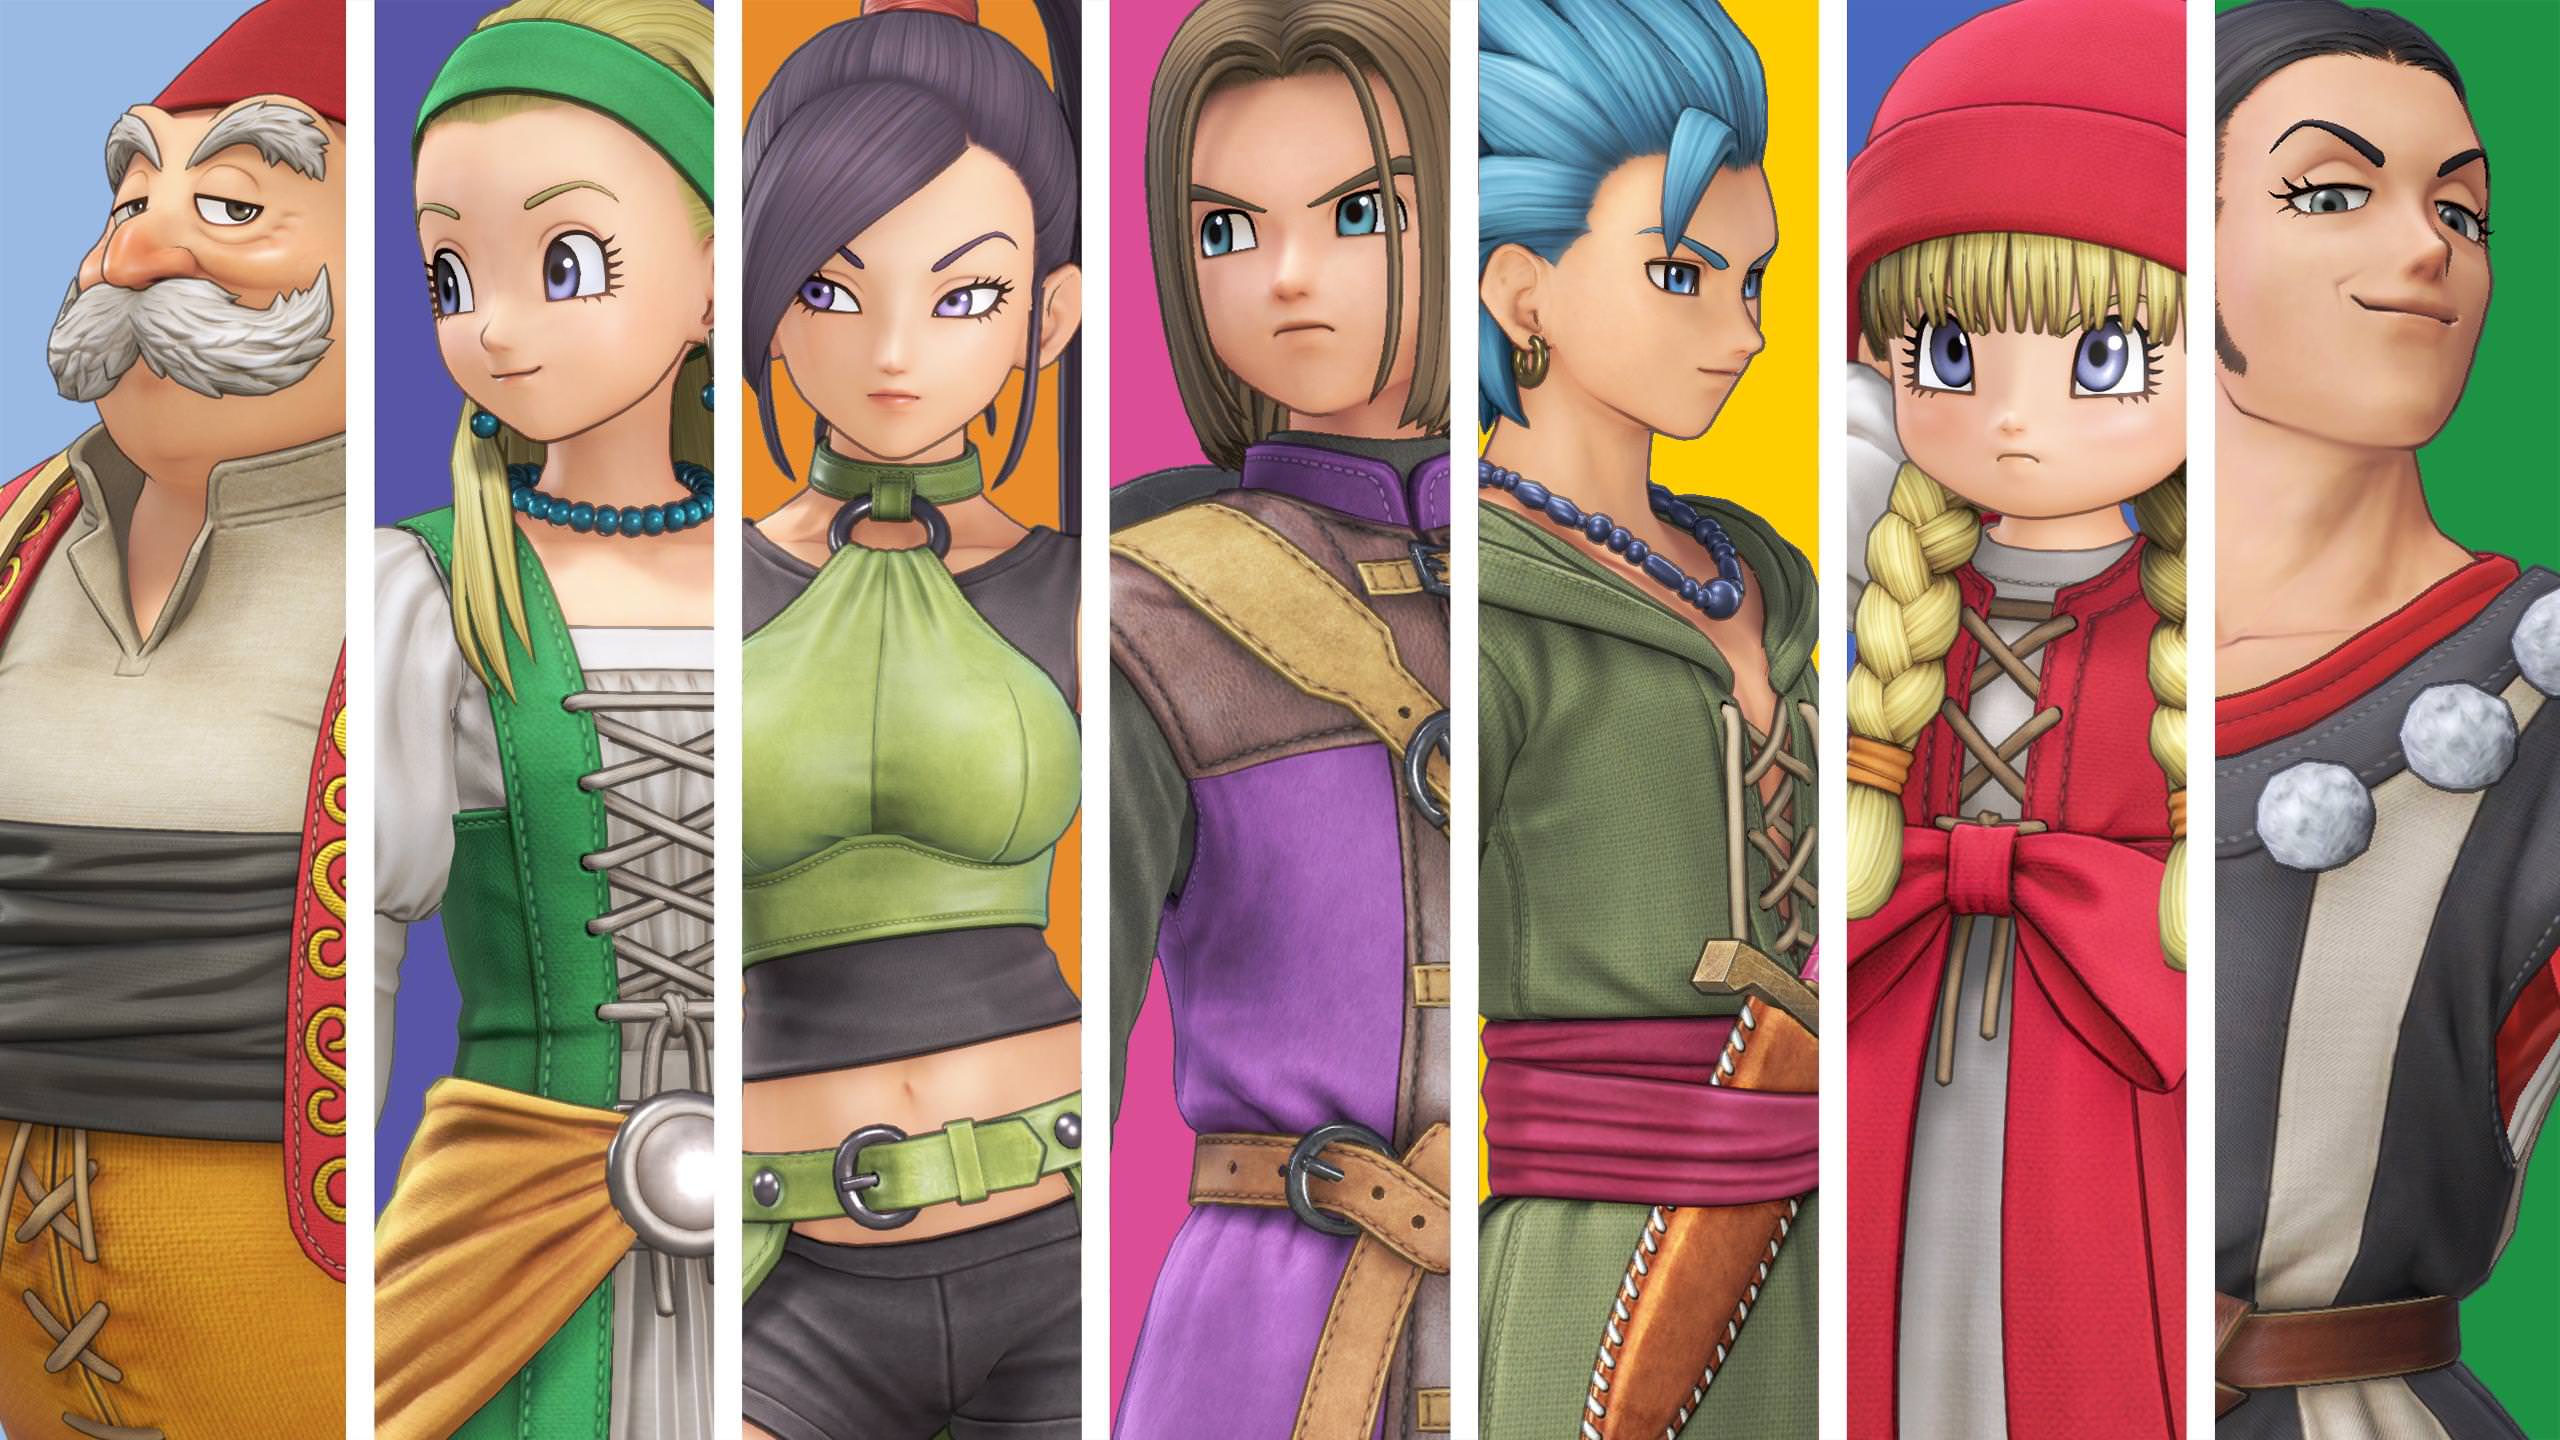 Dragon Quest Xi S Confira As Notas Que O Jogo Vem Recebendo Pela Mídia Internacional